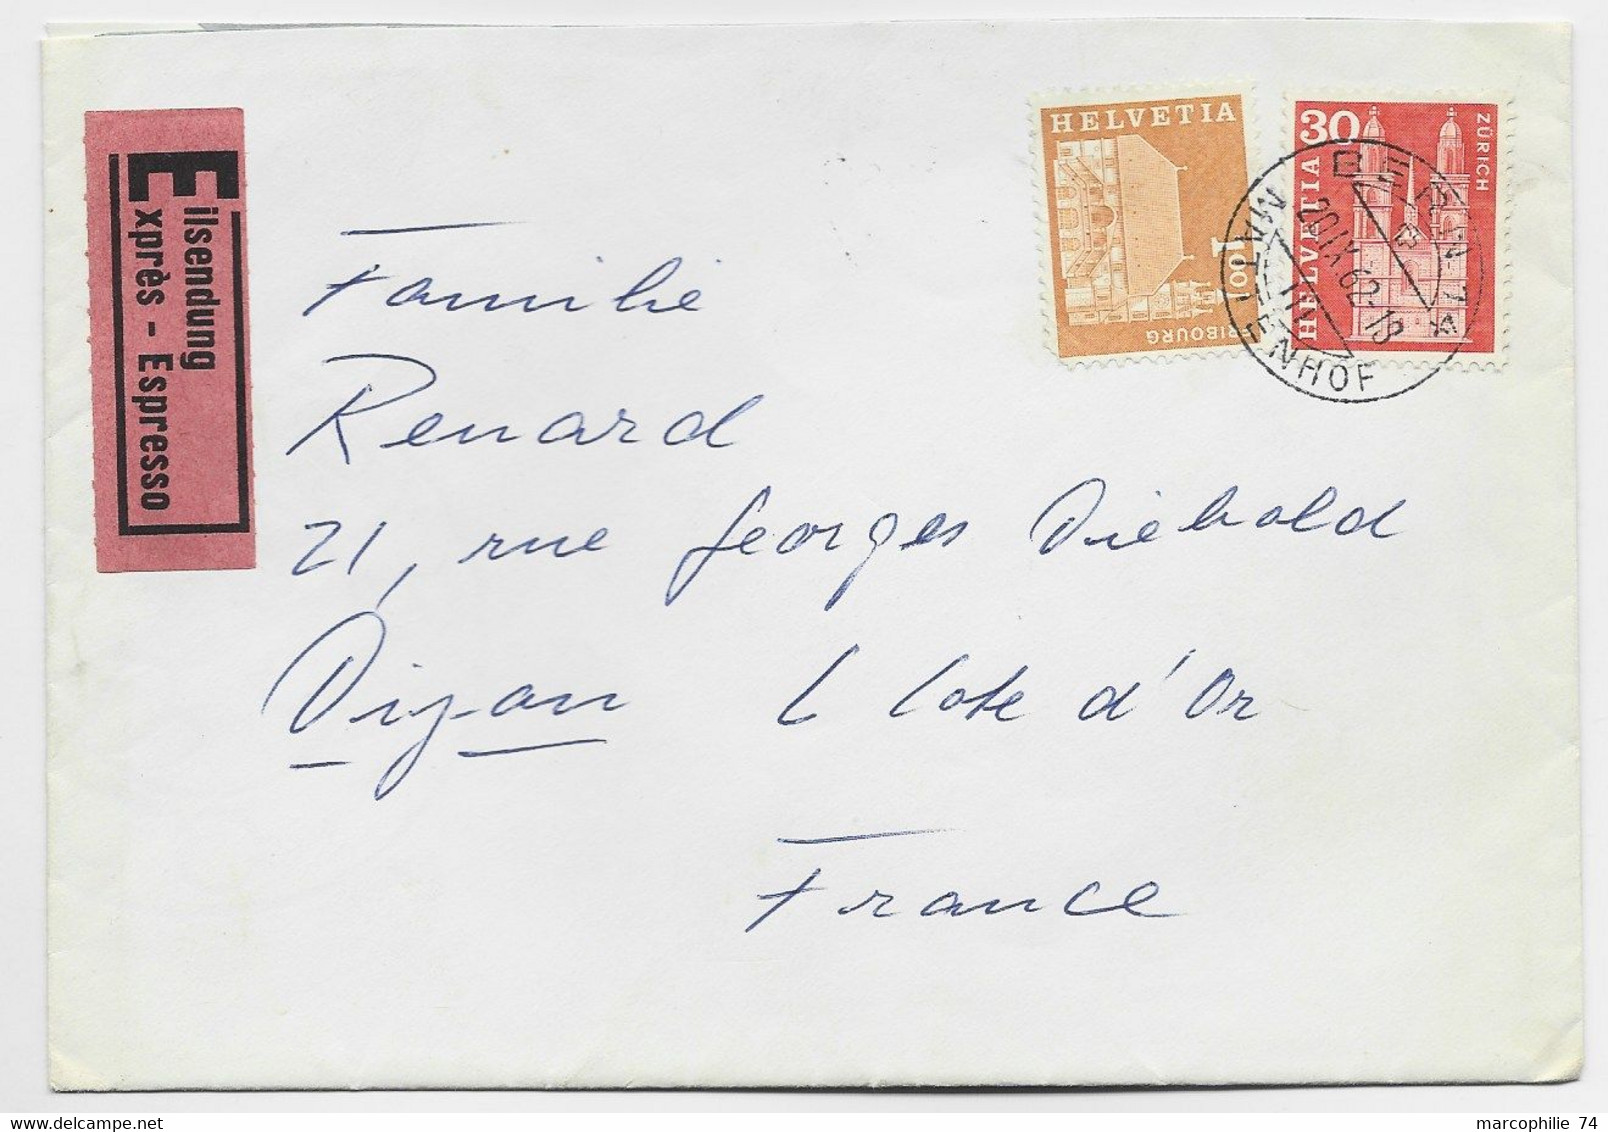 HELVETIA SUISSE 30C+ 1FR LETTRE EXPRES BERN 30.IX.1962 MATTENHOF TO FRANCE AU DOS PARIS GARE PLM - Covers & Documents